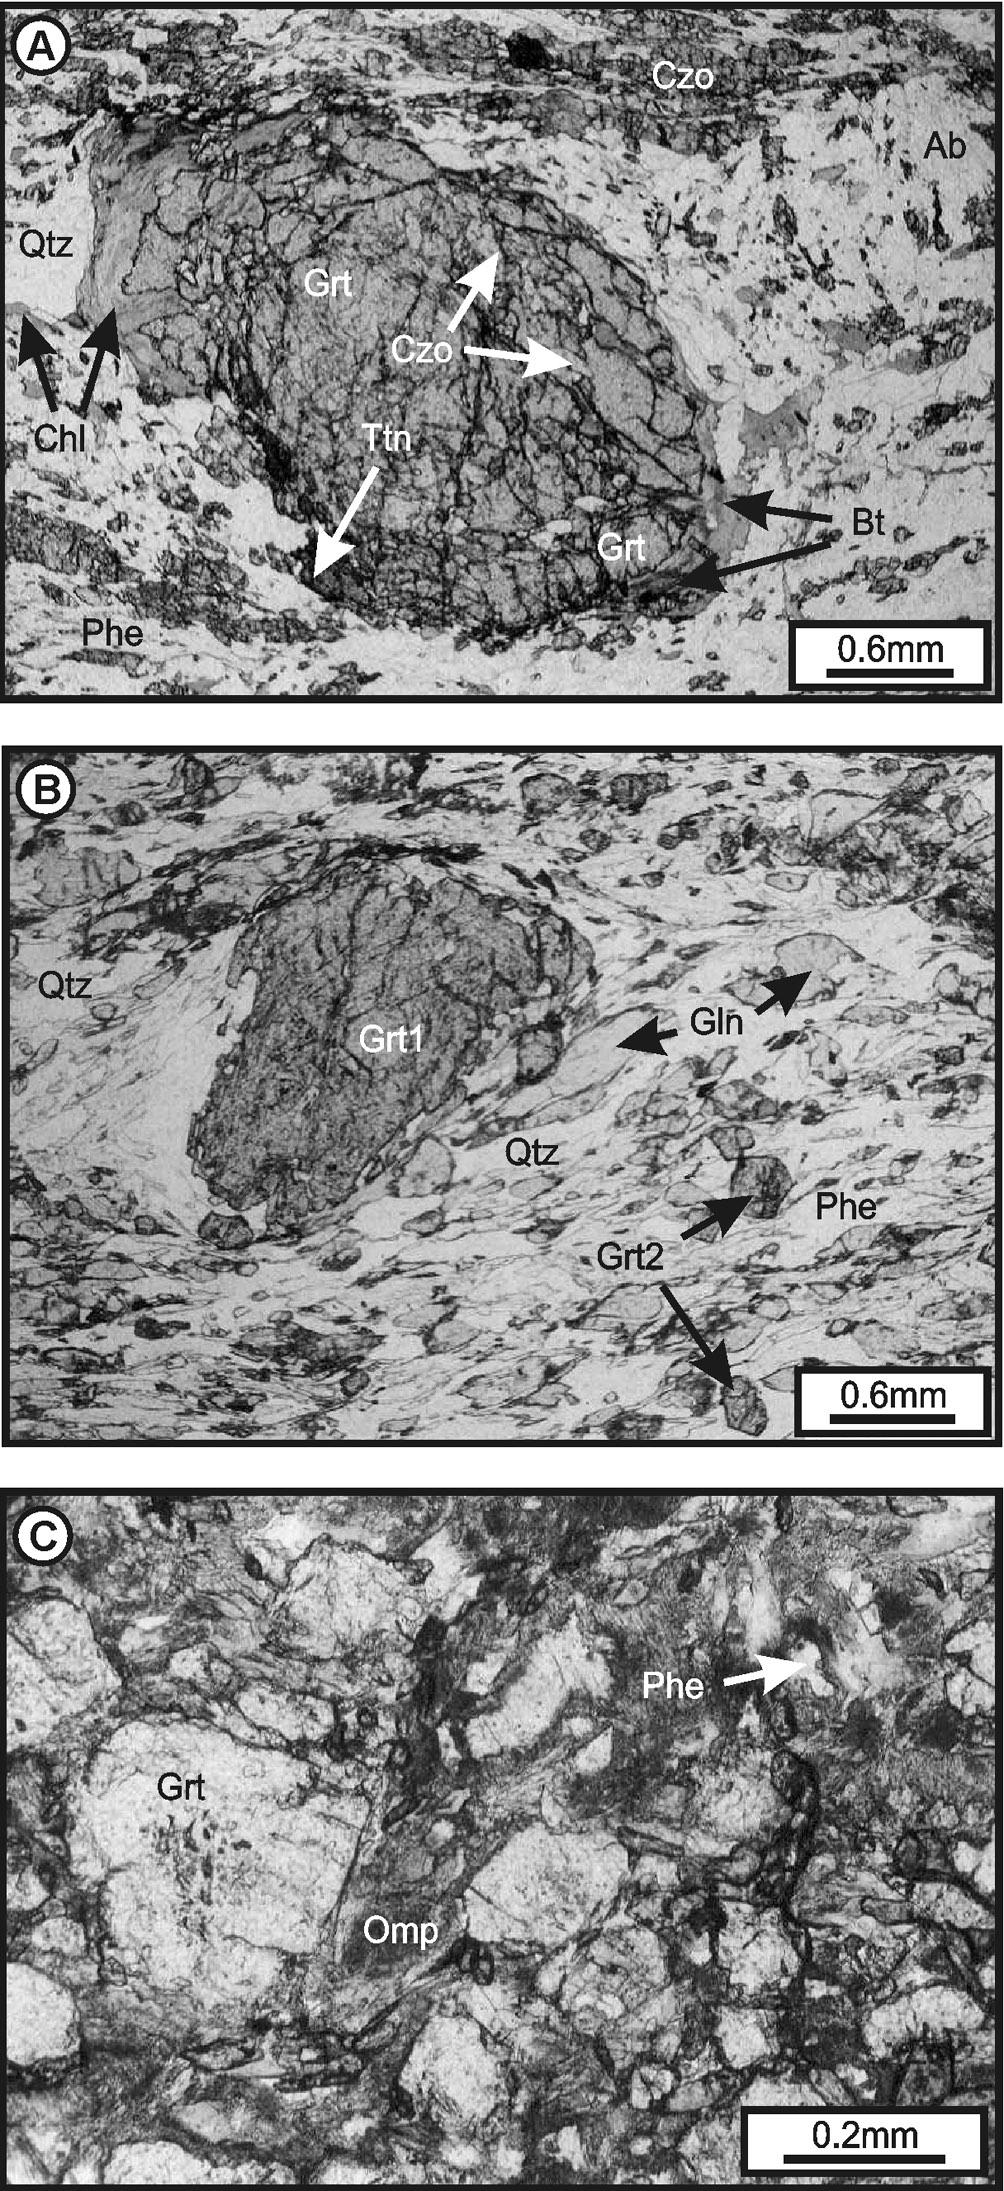 96 F. Rolfo et al. / Geodinamica Acta 17 (2004) 91 105 mica + quartz.